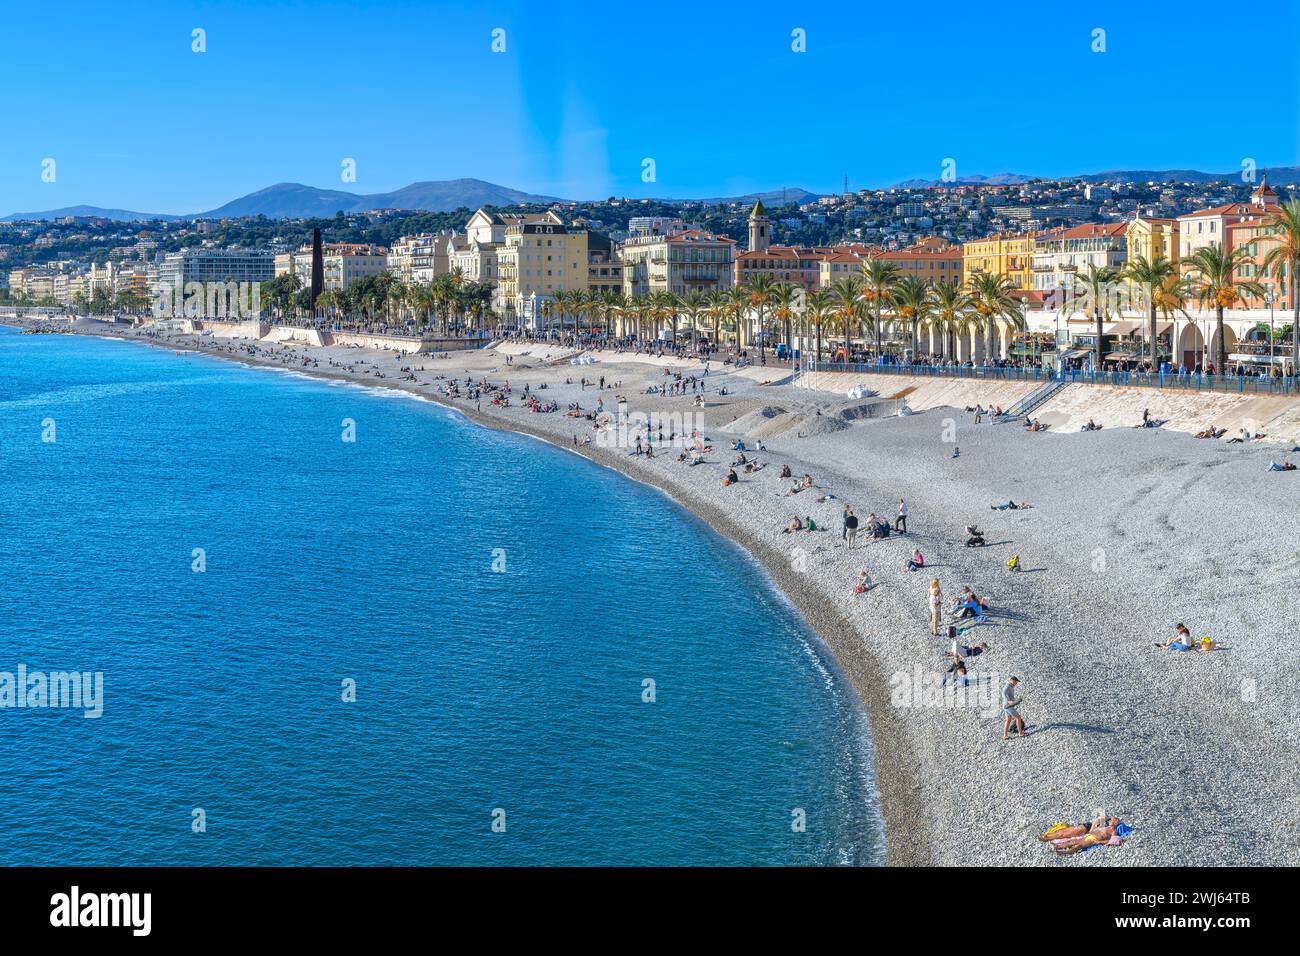 La spiaggia di ciottoli e le acque limpide di Castel Plage a Nizza, sulla Costa Azzurra - Côte d'Azur, Francia. Non c'è da meravigliarsi che si chiami Costa Azzurra! Foto Stock